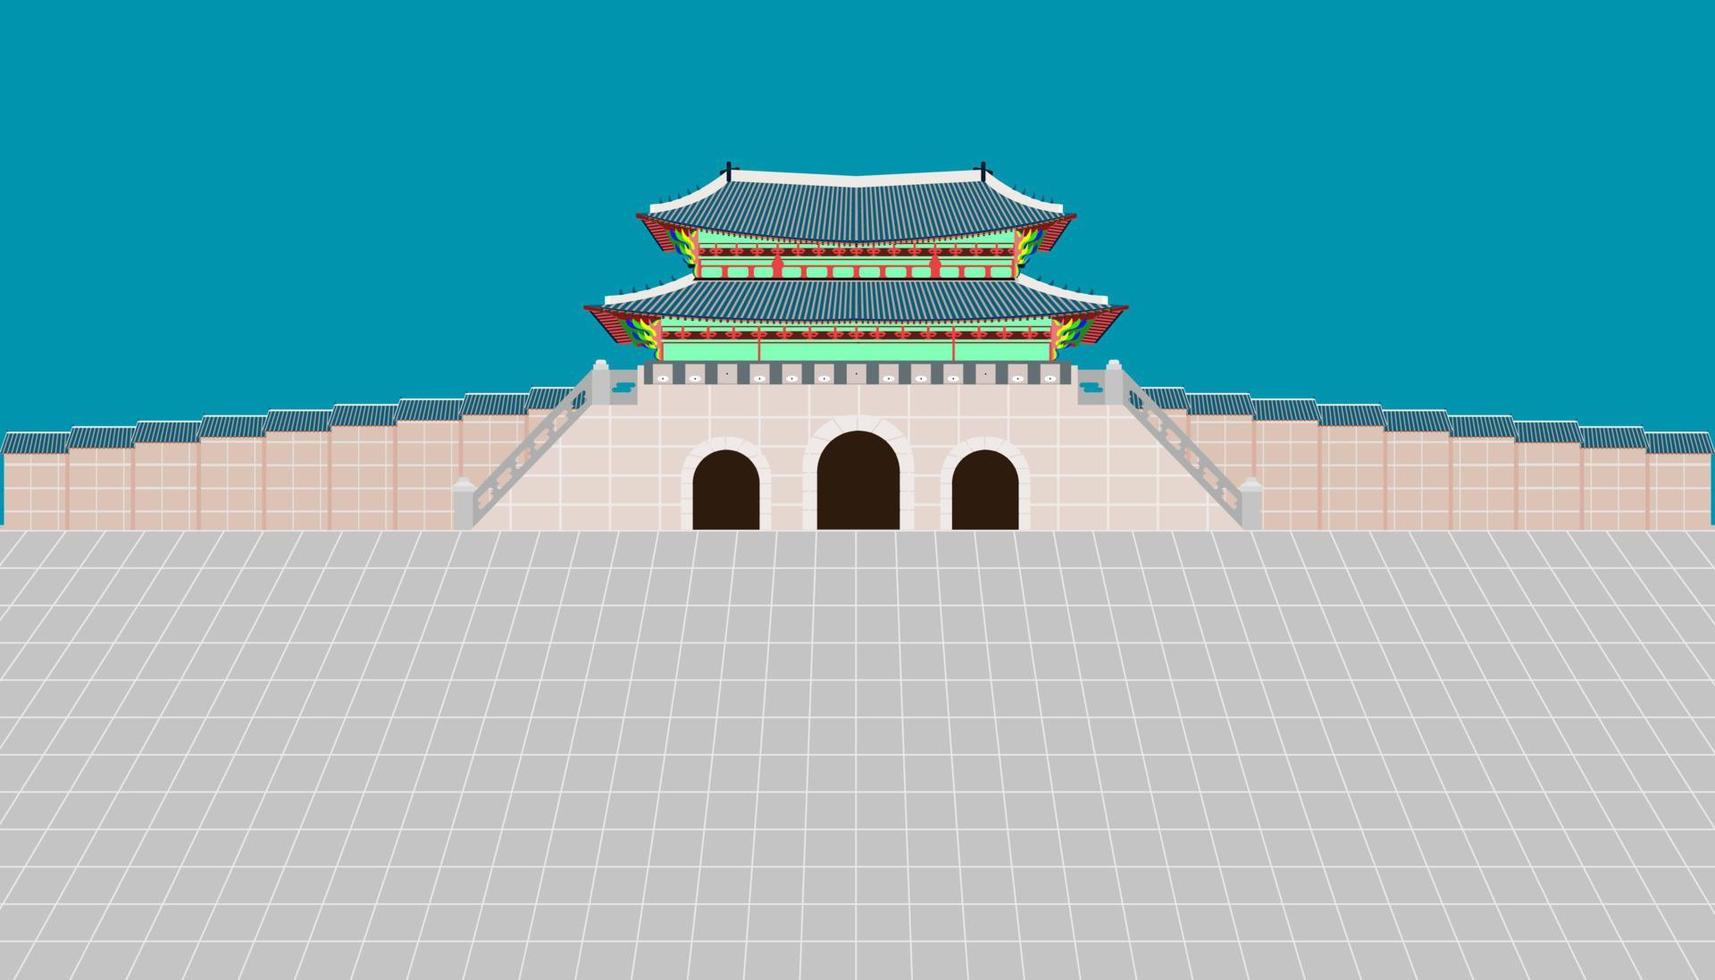 vue arrière porte gwanghwamun et long mur et grande cour au palais gyeongbokgung à séoul corée du sud illustration vecteur eps10